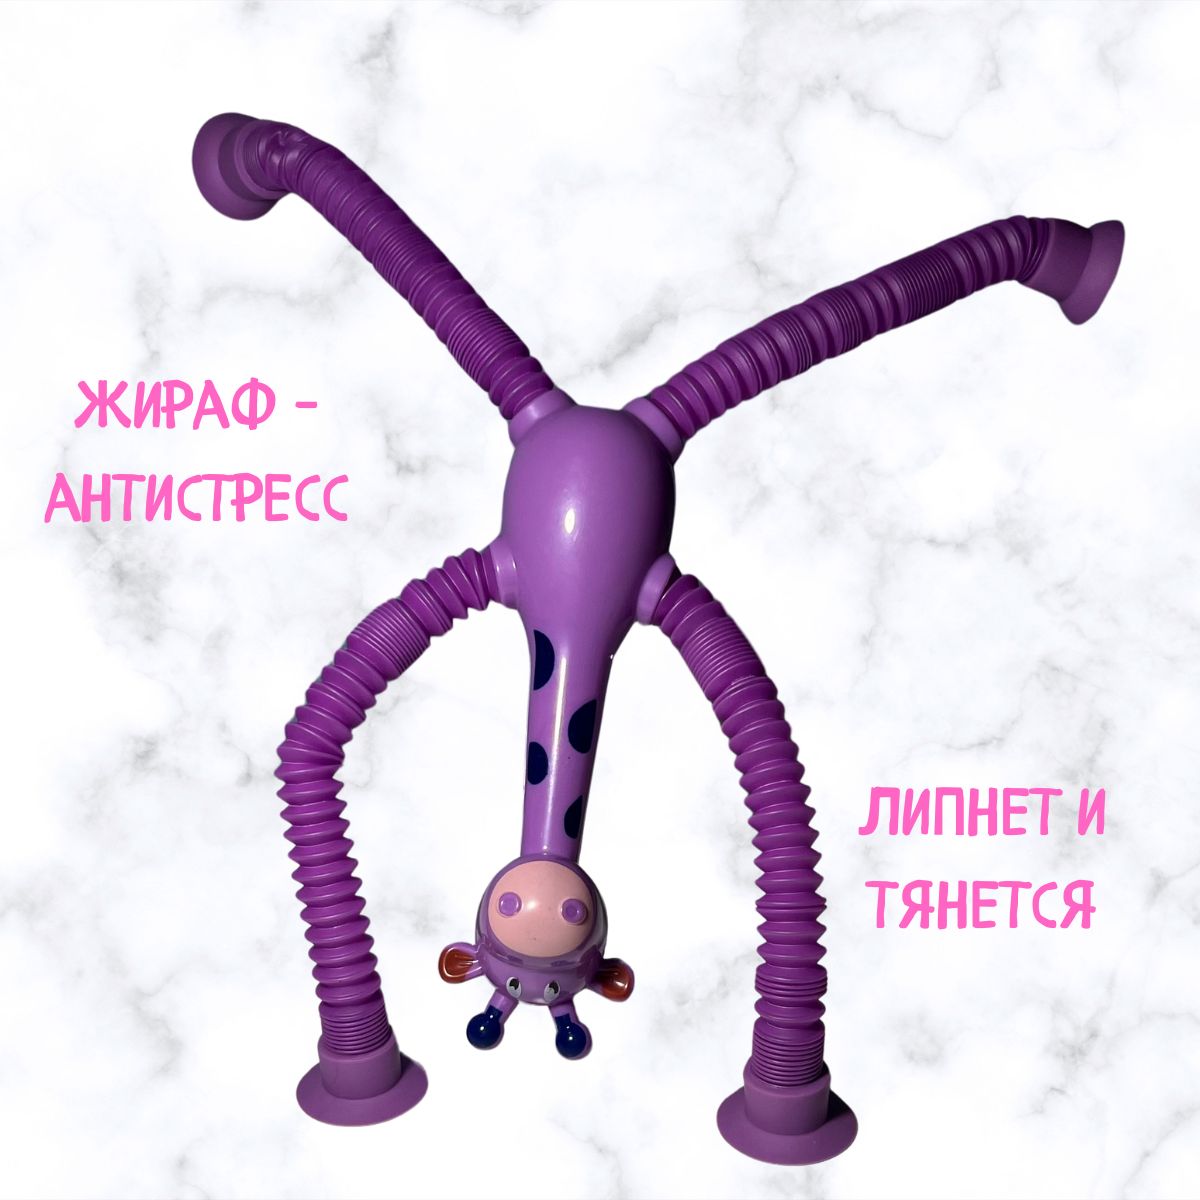 Игрушка-антистресс Жираф фиолетовый